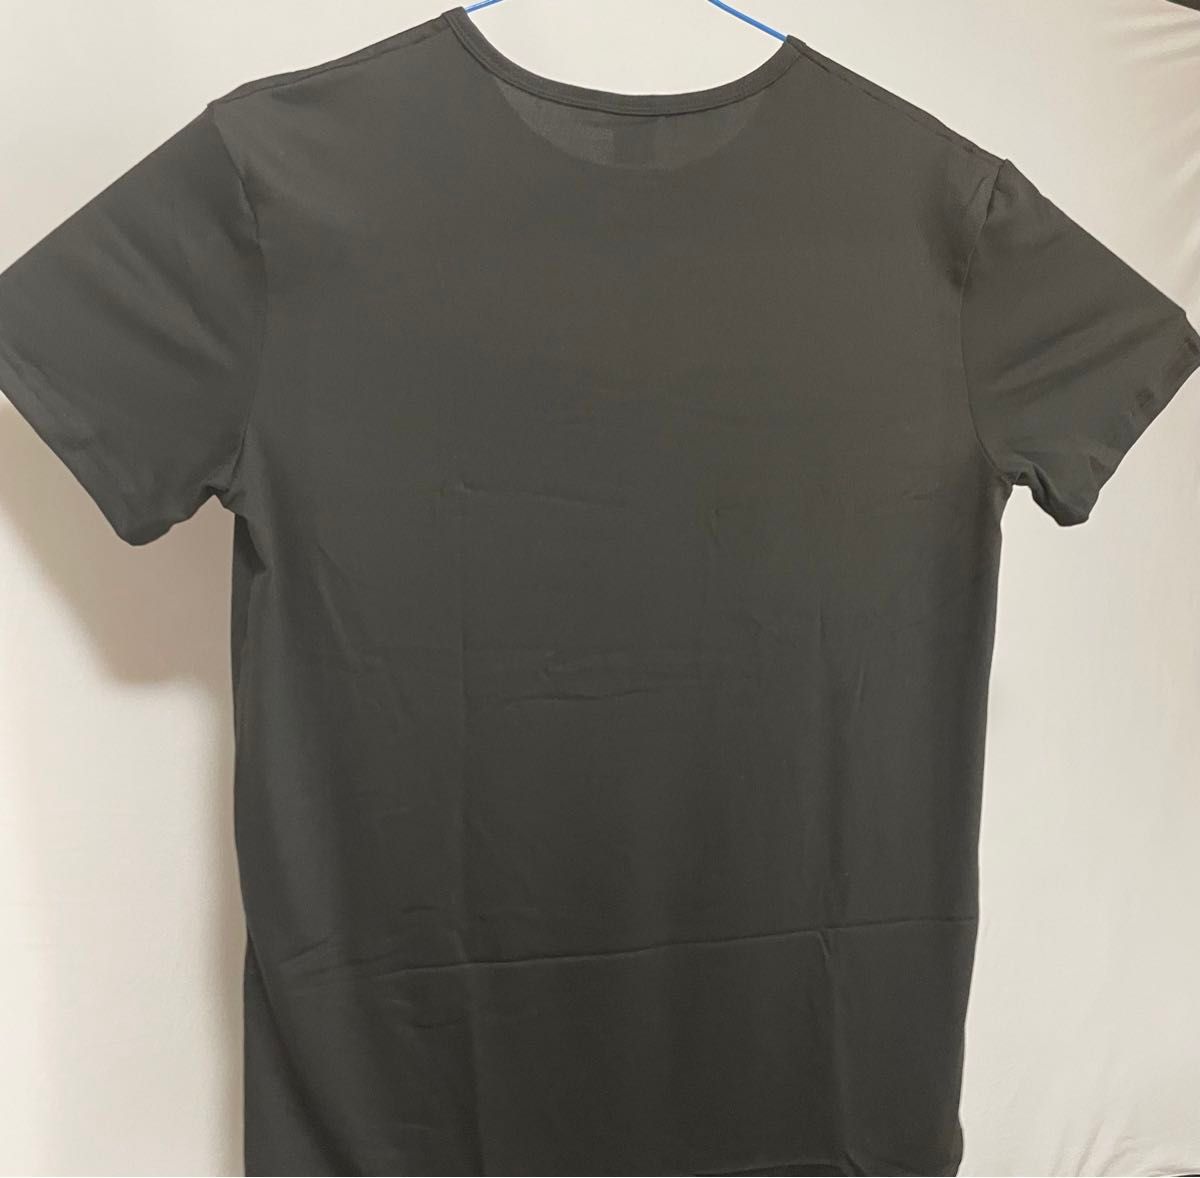 【新品未使用】Tシャツ ブラック 誰とも被らないさりげないおしゃれのキュートなポルシェ風Tシャツ